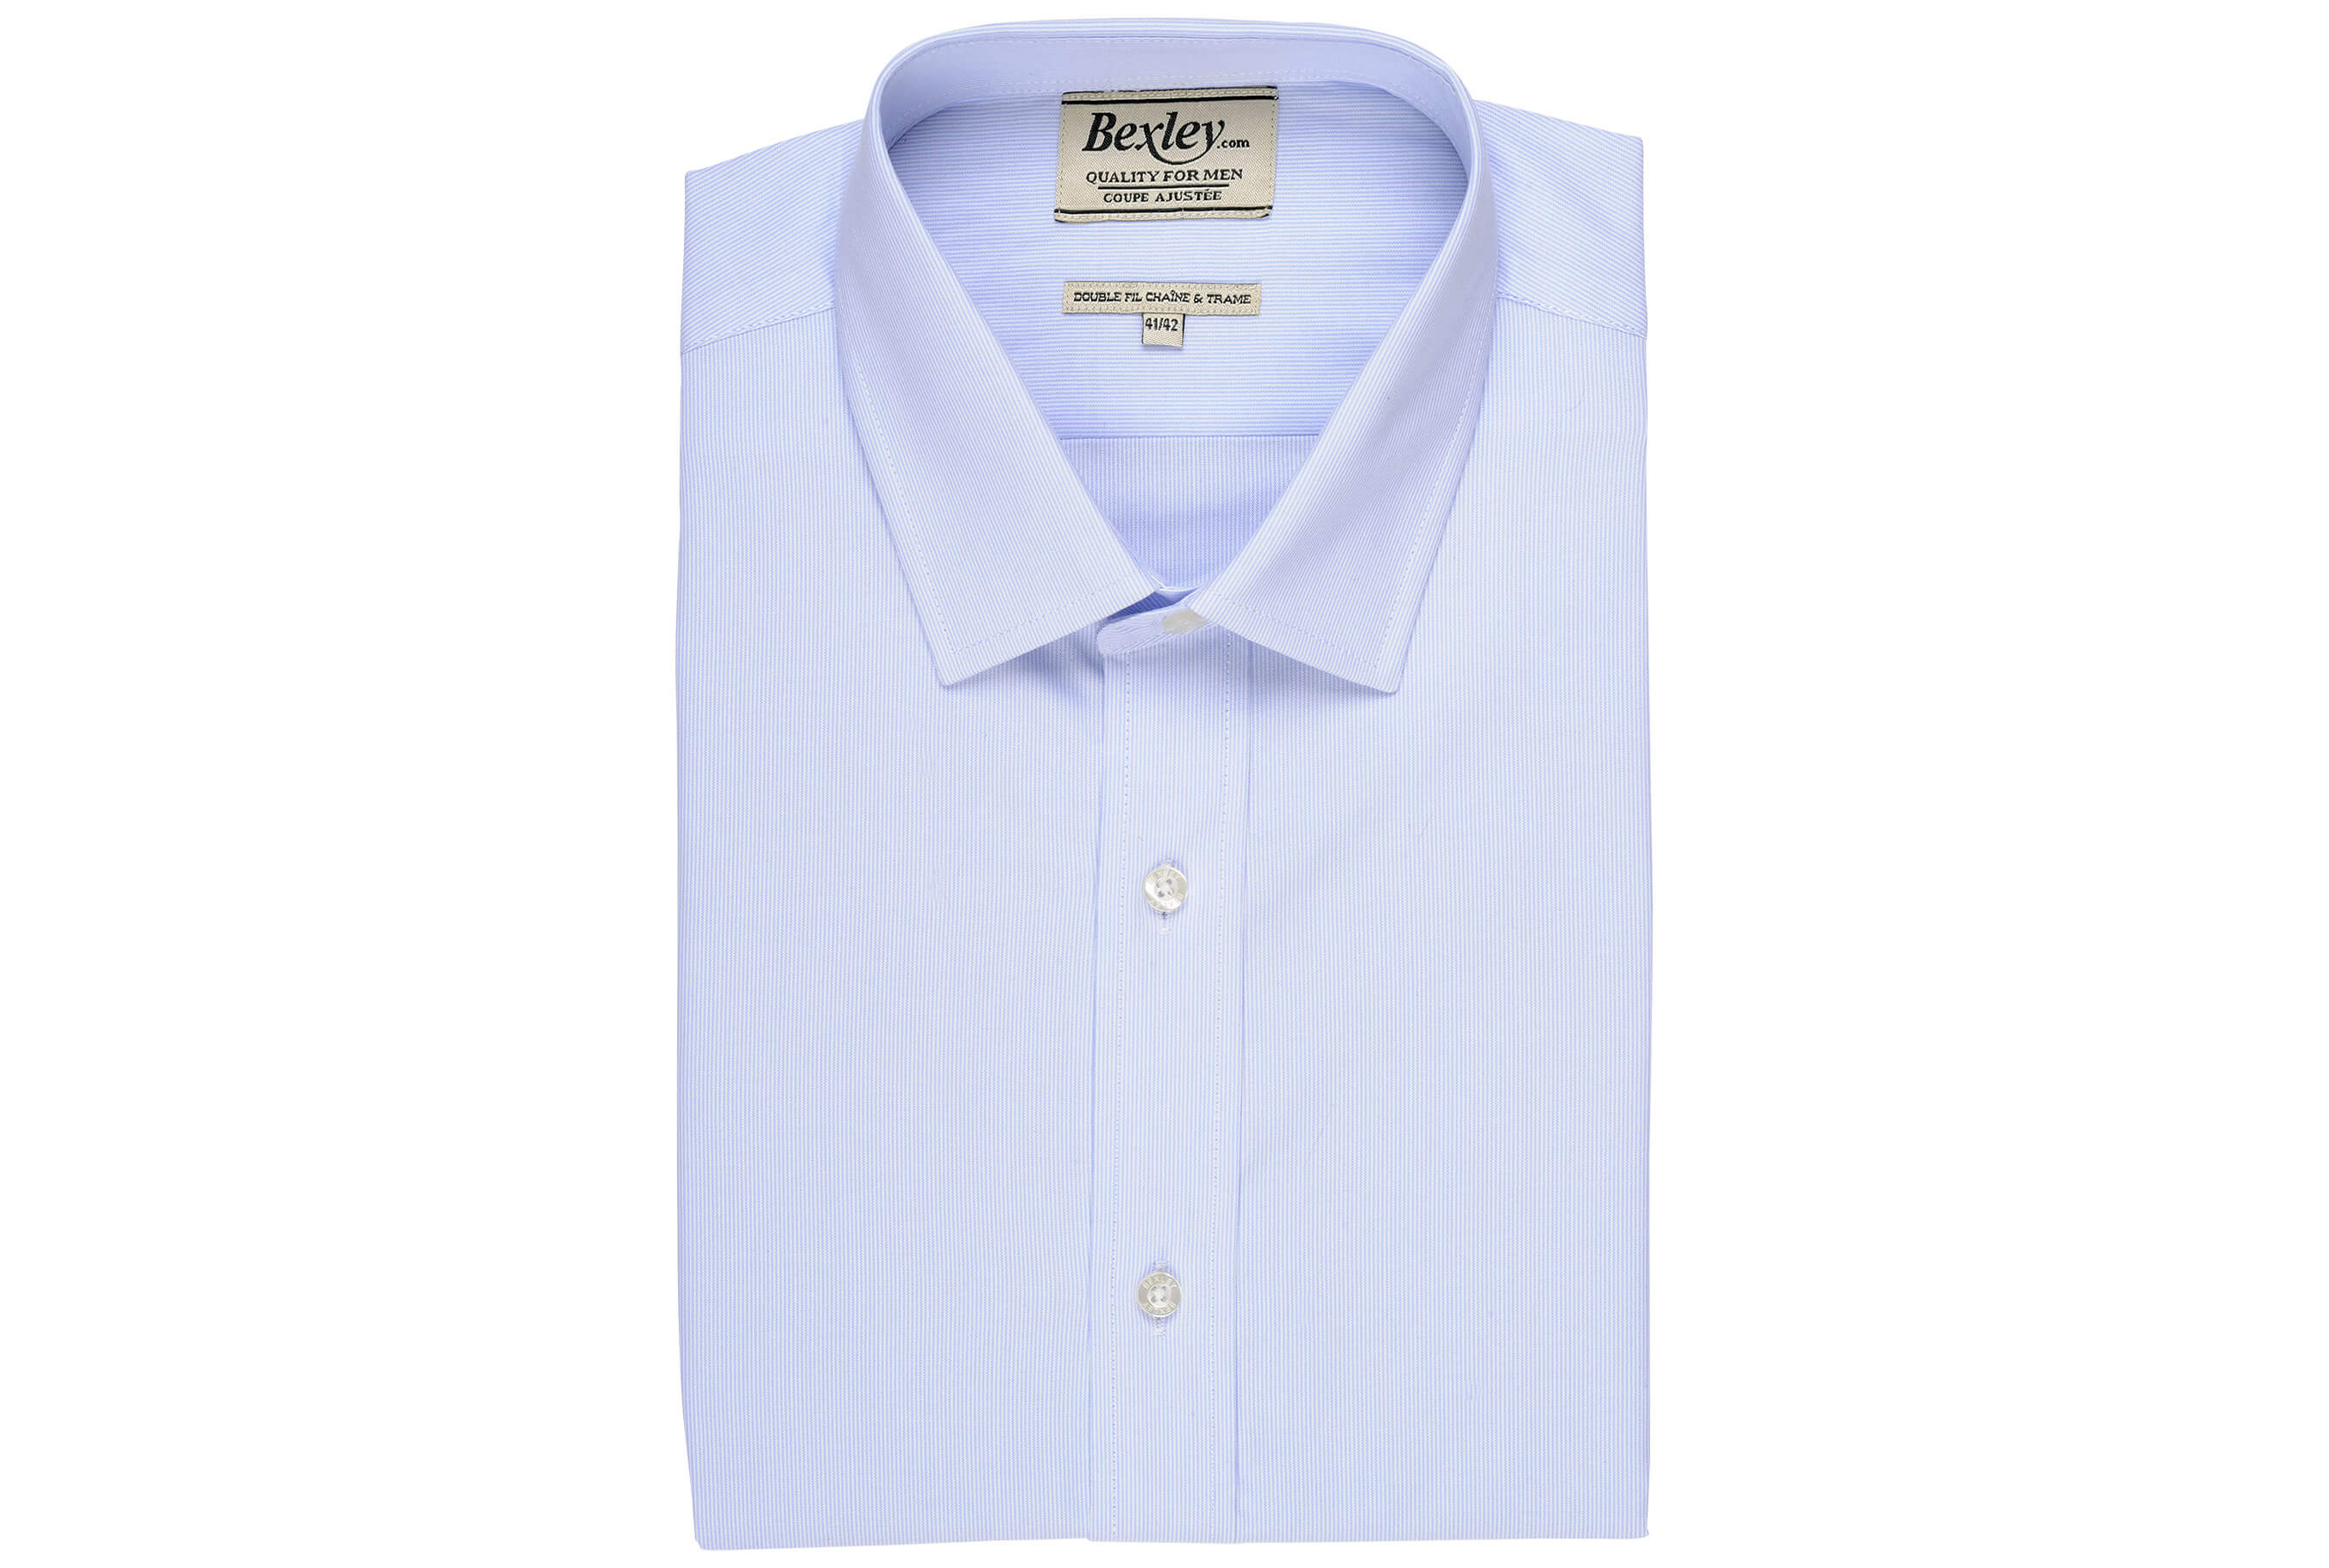 bexley chemise homme 100% coton, bleu clair et blanc, manches longues, coupe cintrée